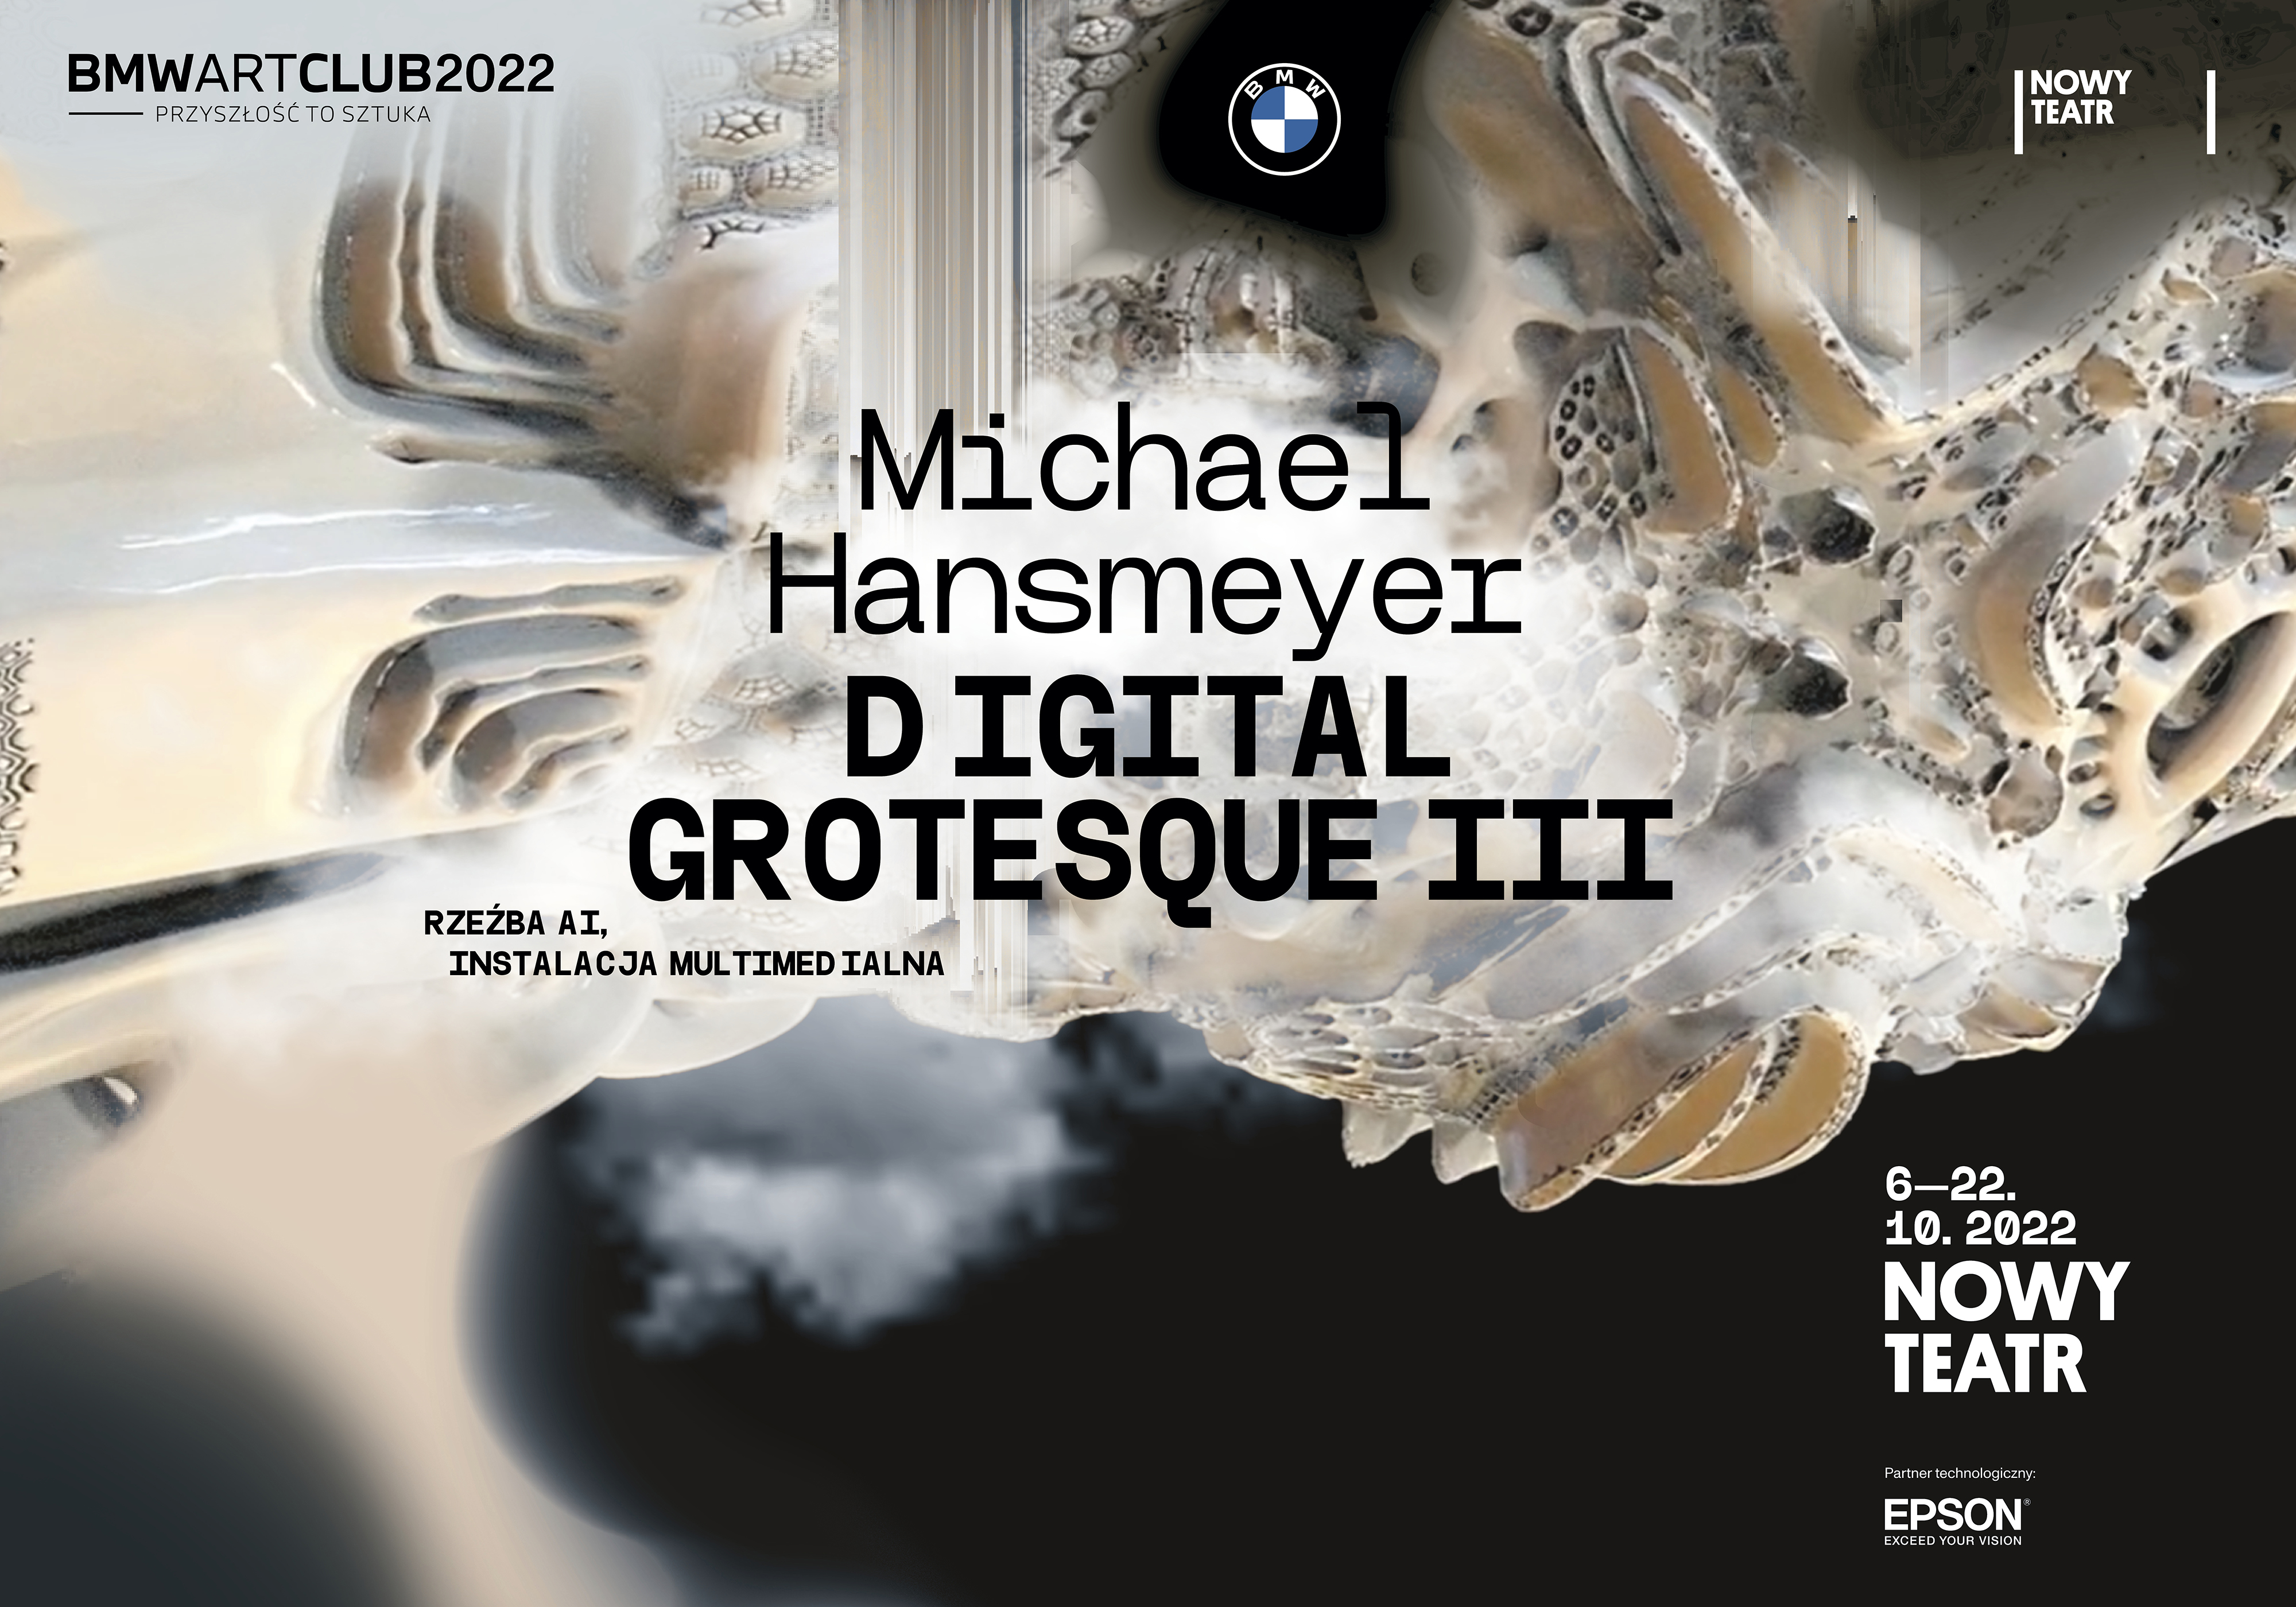 Epson wraz z BMW prezentuje projekt wybitnego artysty: przed nami otwarcie wystawy Michela Hansemayera w Nowym Teatrze w Warszawie